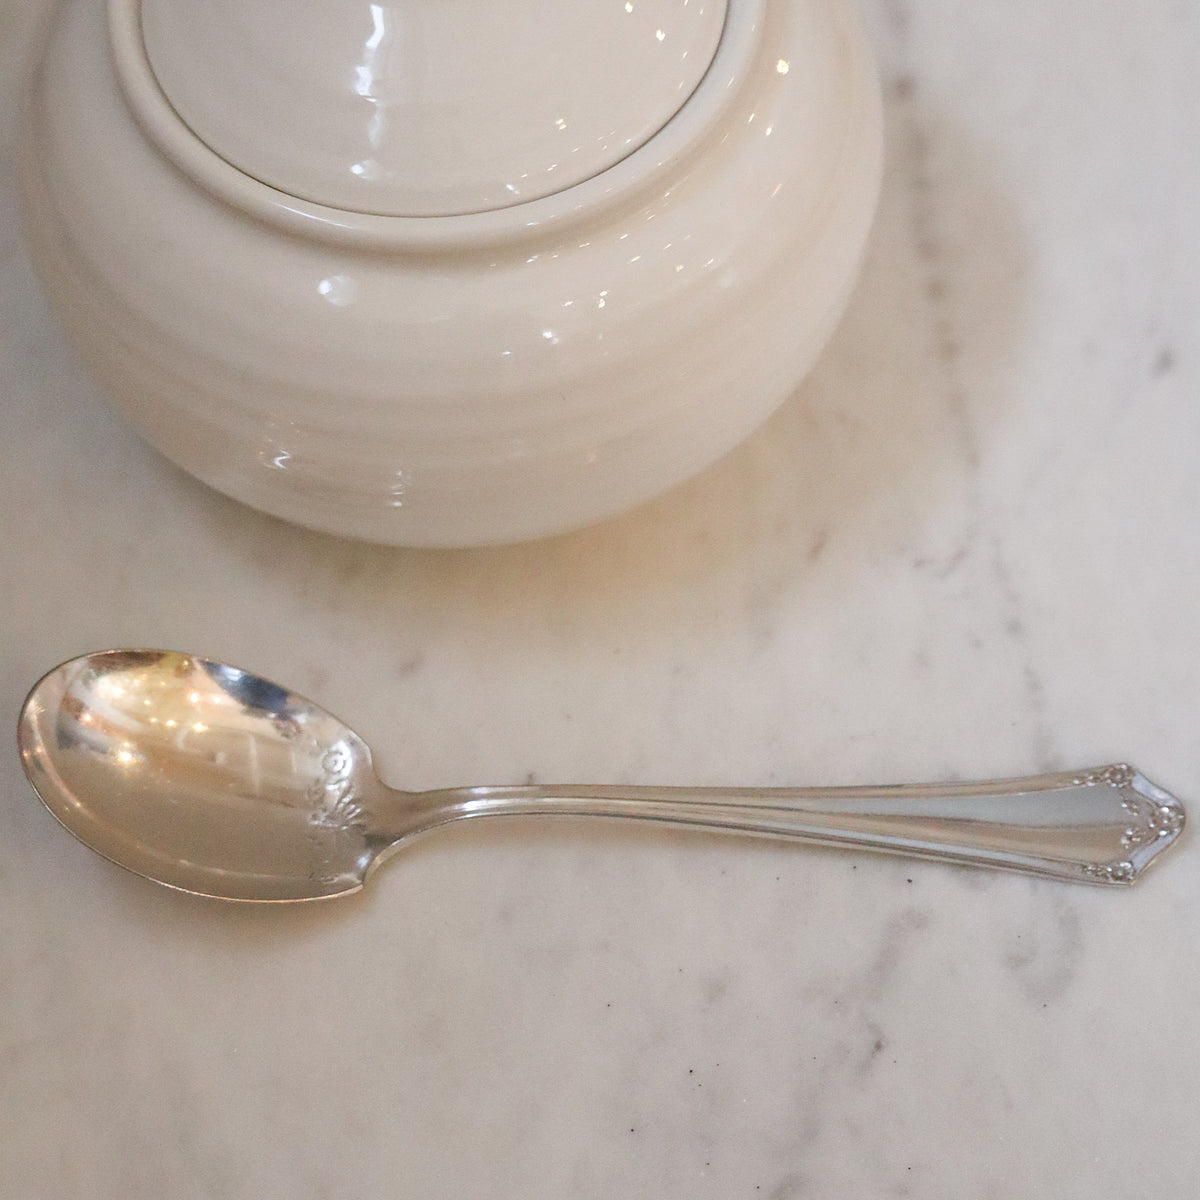 Antique Sugar Spoon